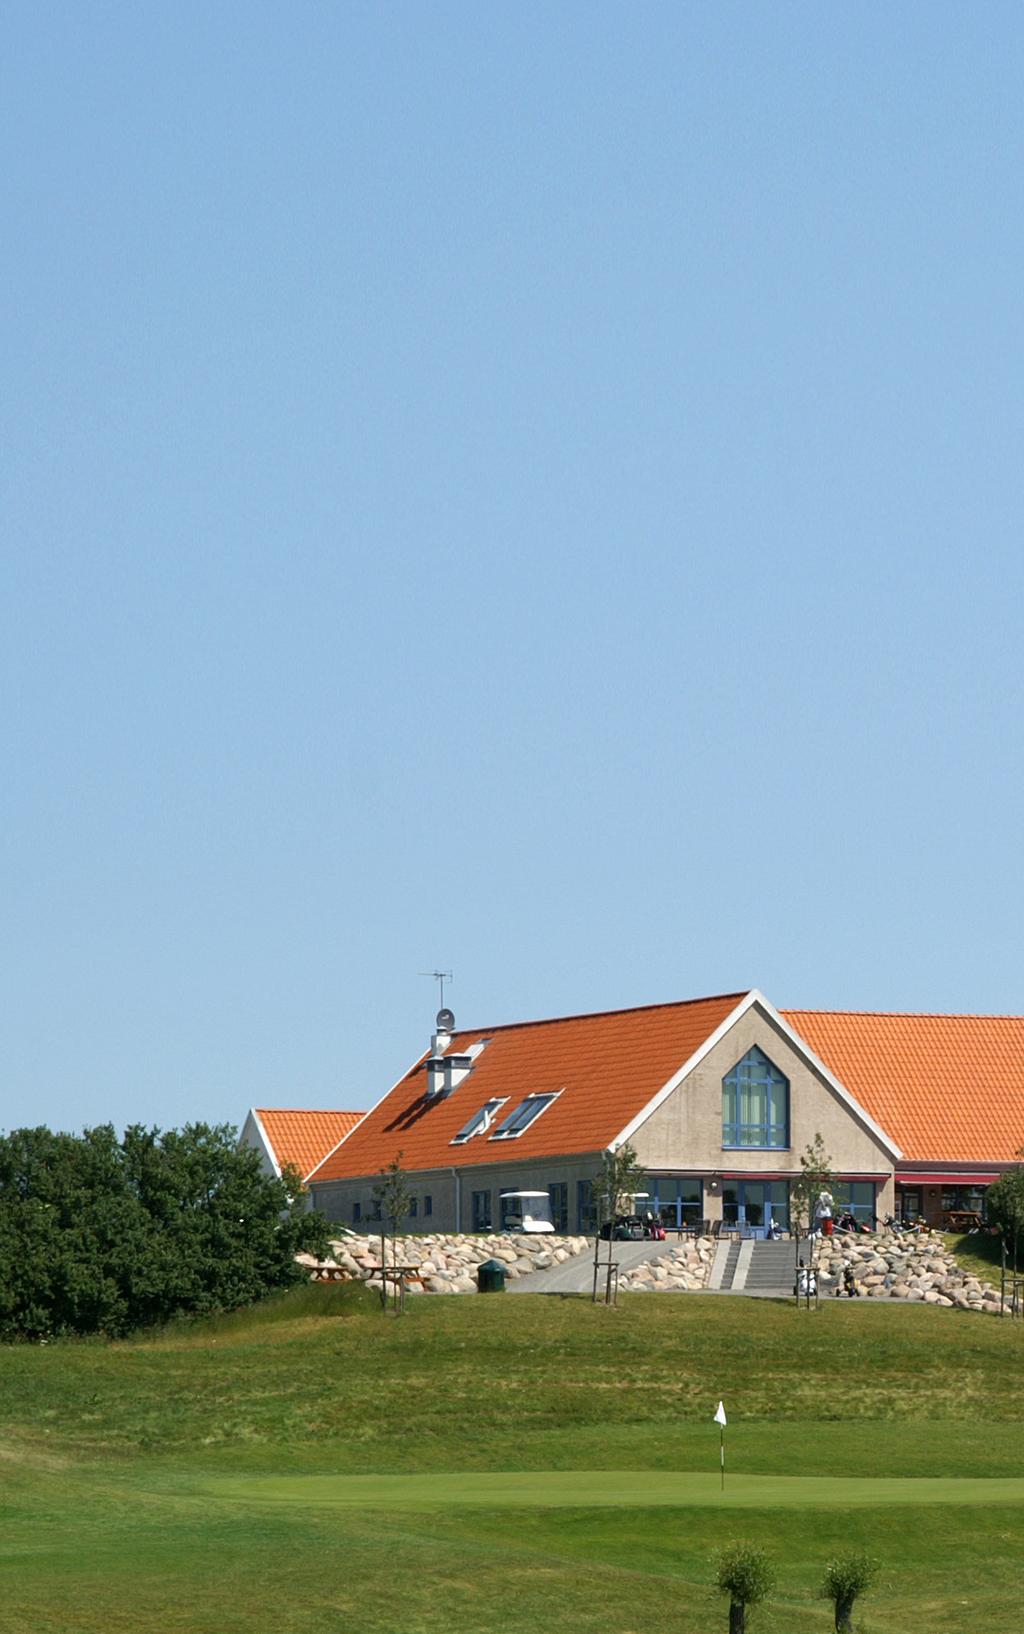 VÄLKOMMEN TILL TEGELBERGA GK Tegelberga Golfklubb bildades 1988 och anläggningen invigdes sommaren 1990, då 18-hålsbanan stod färdig.